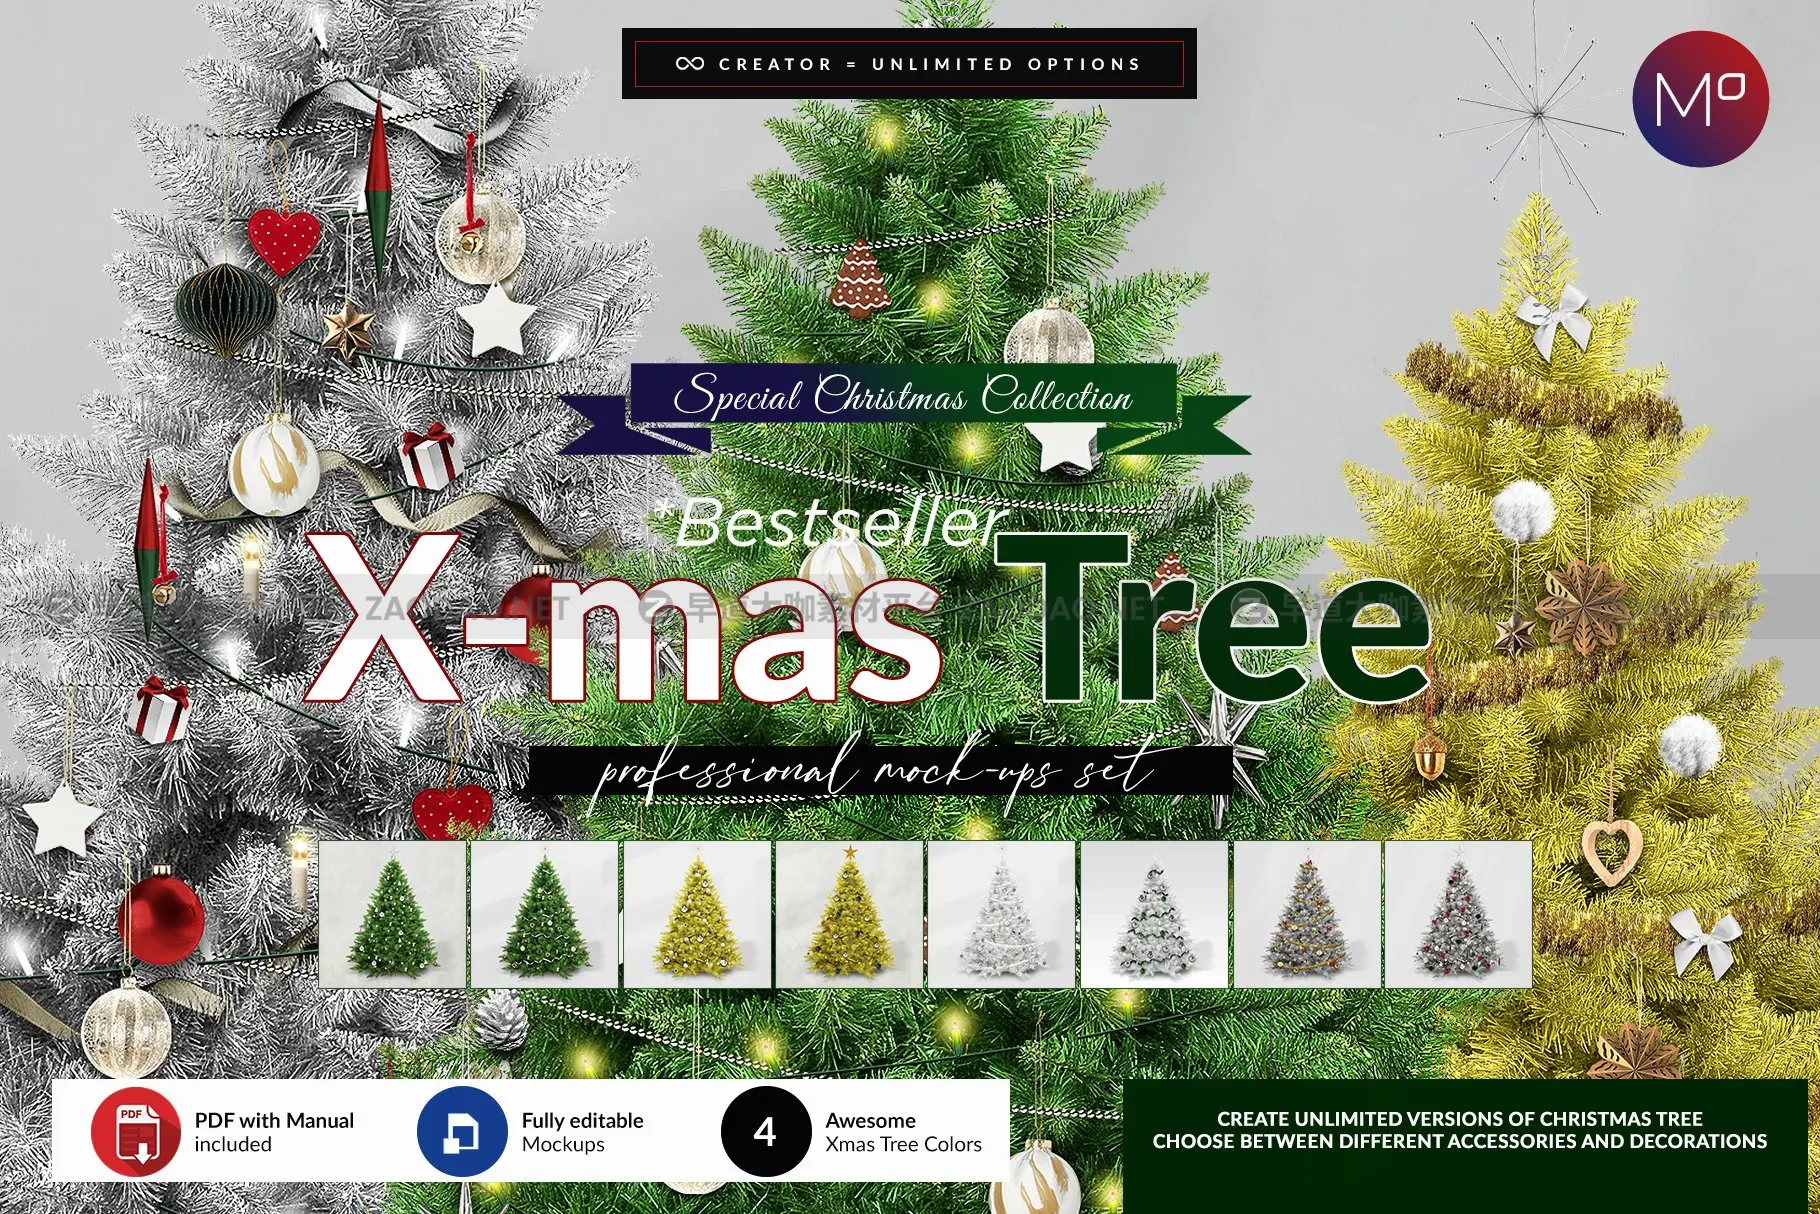 自定义圣诞节新年装饰圣诞树节日礼物Ps样机设计素材展示效果模板 Tree Creator Mock-up插图